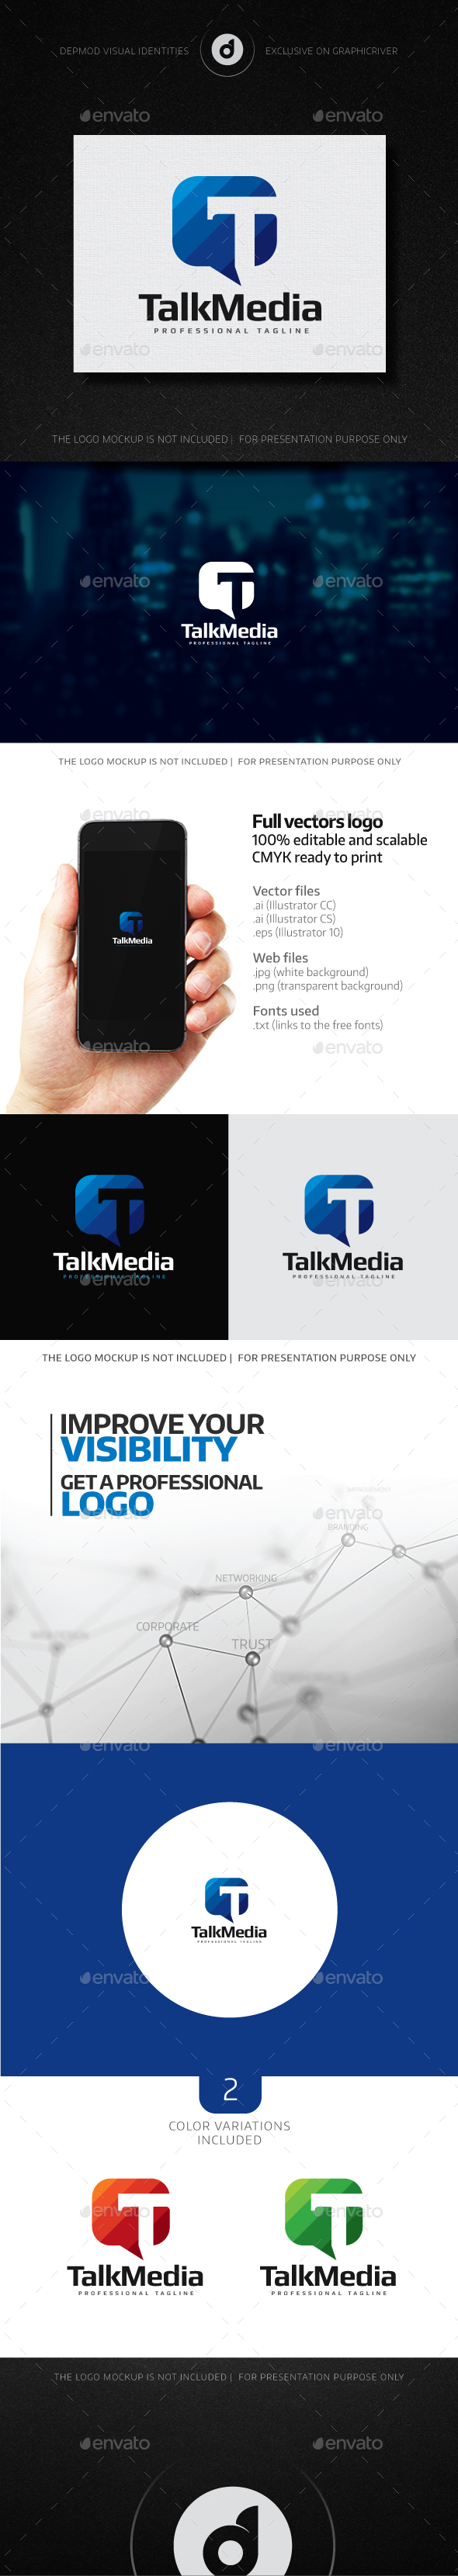 TalkMedia